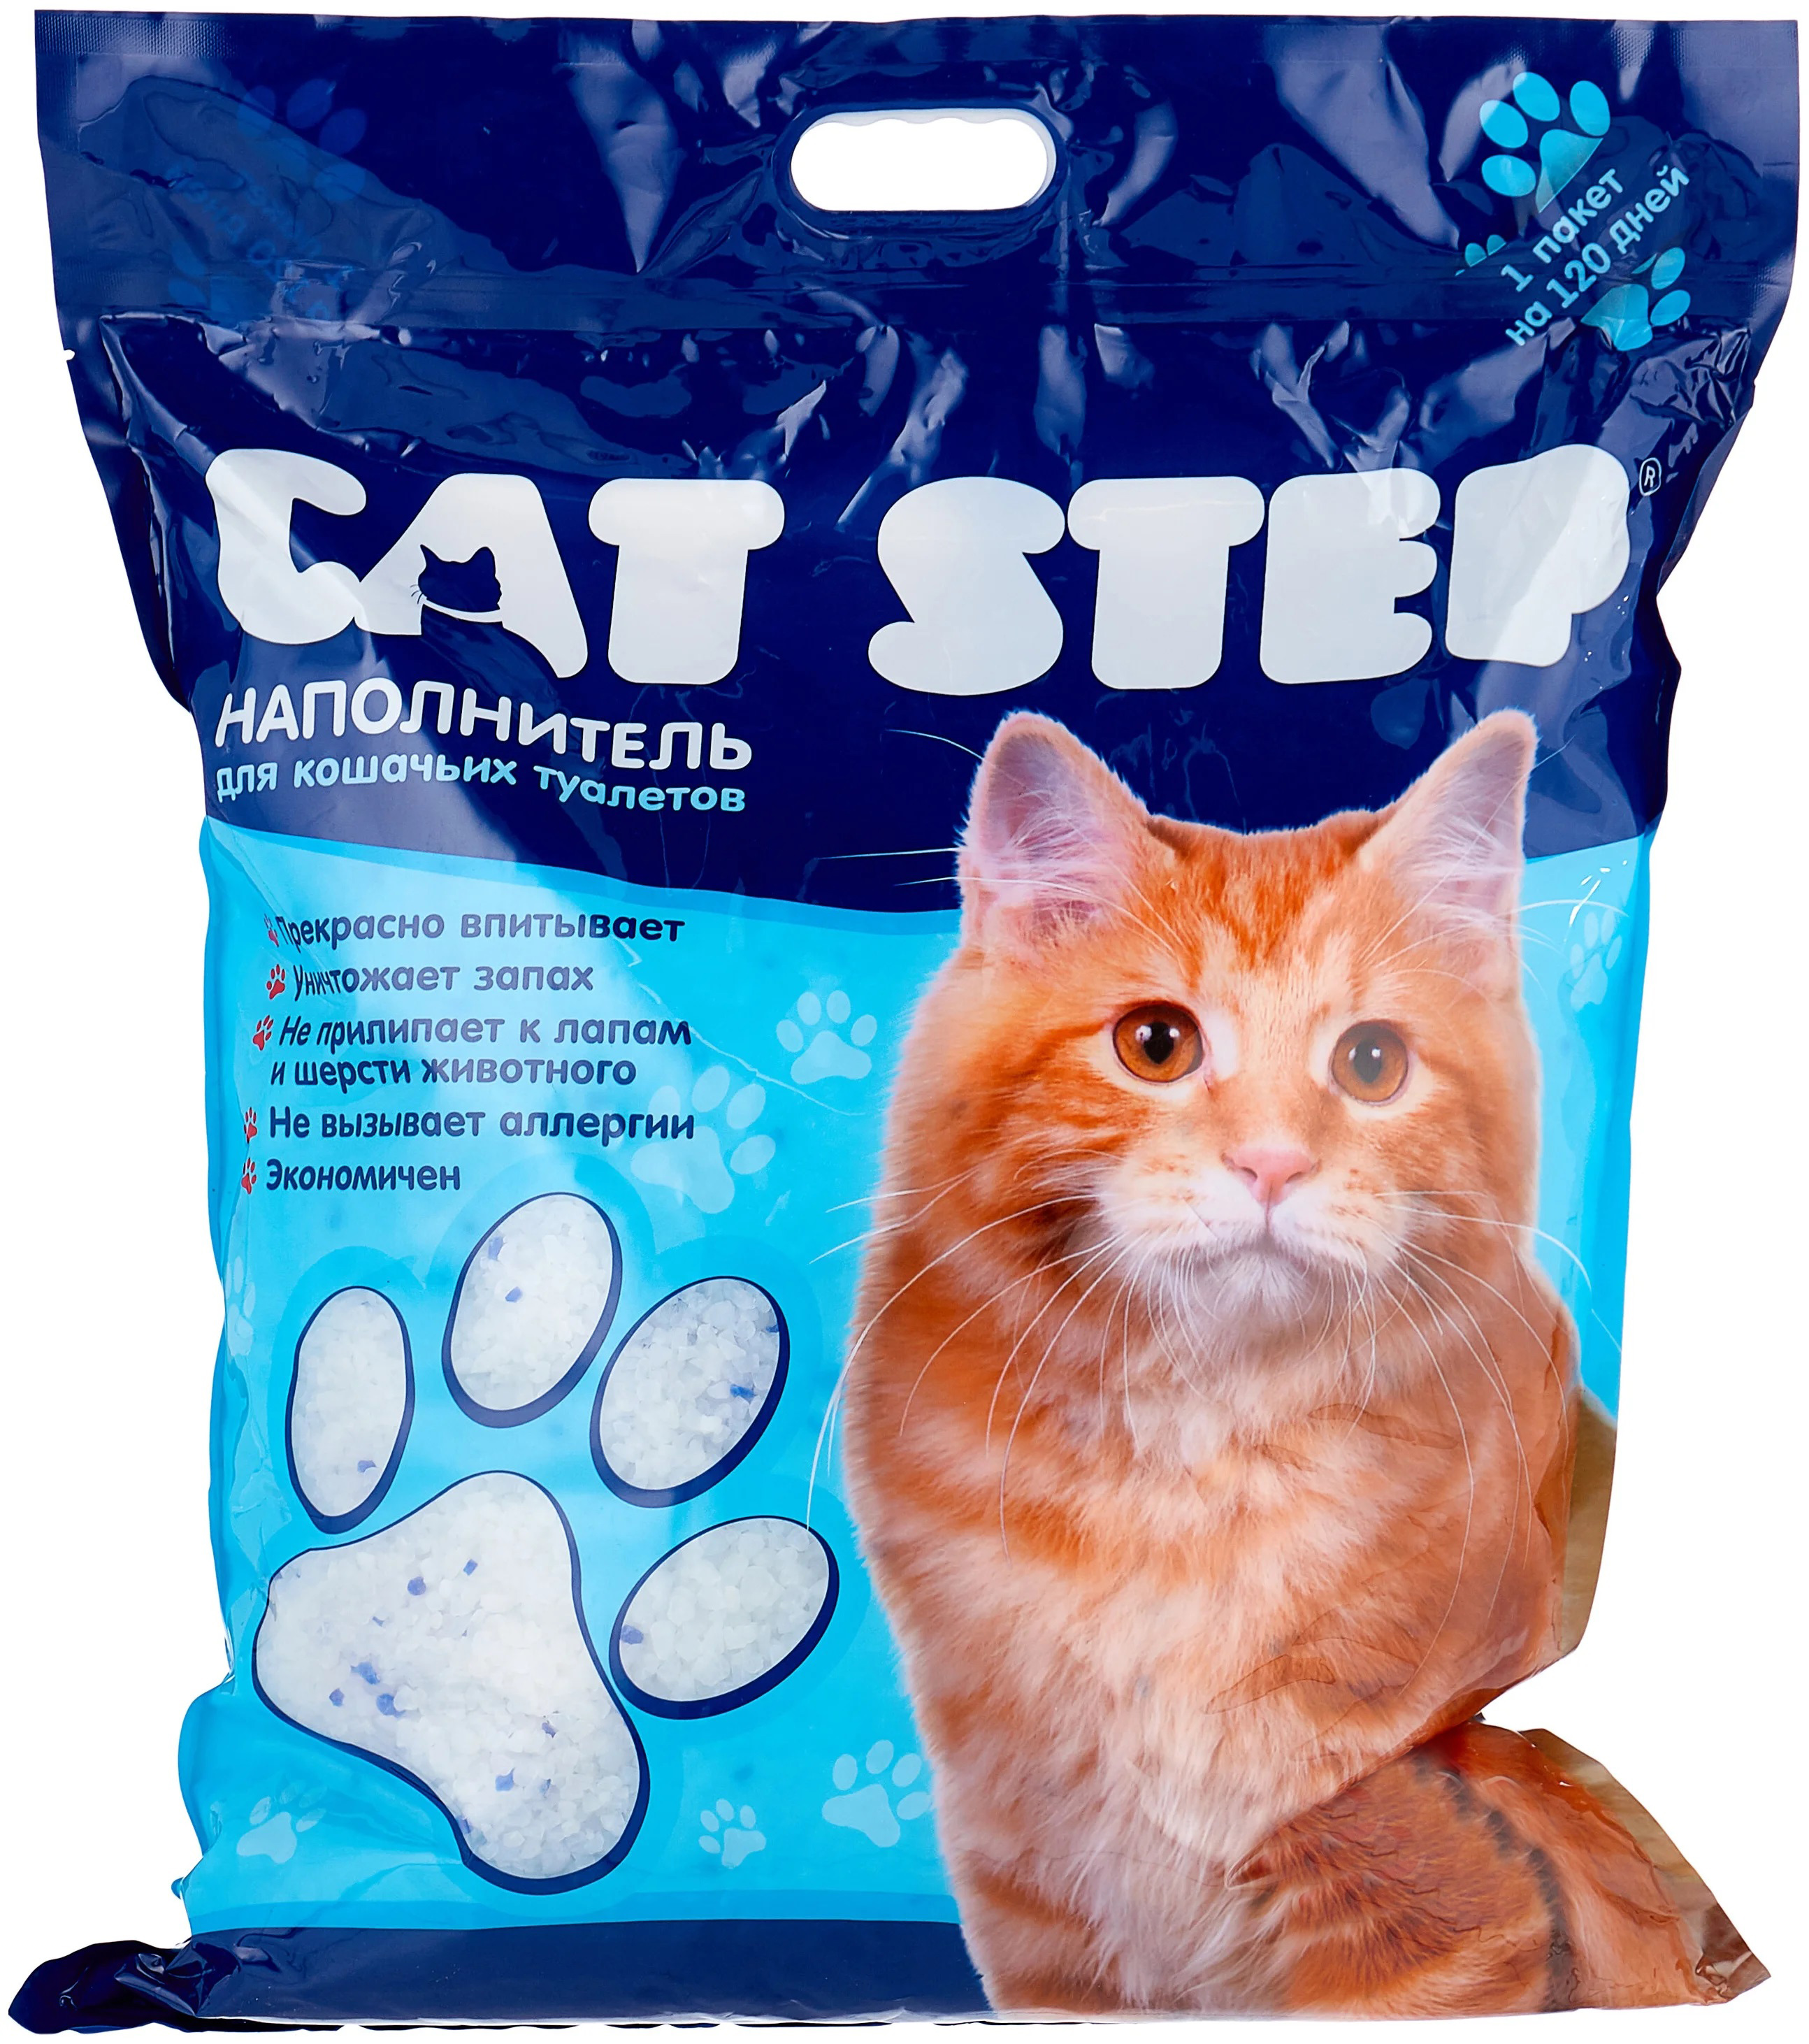 Наполнитель силикагелевый для кошачьего туалета Cat step 7.6 л 3.62 кг